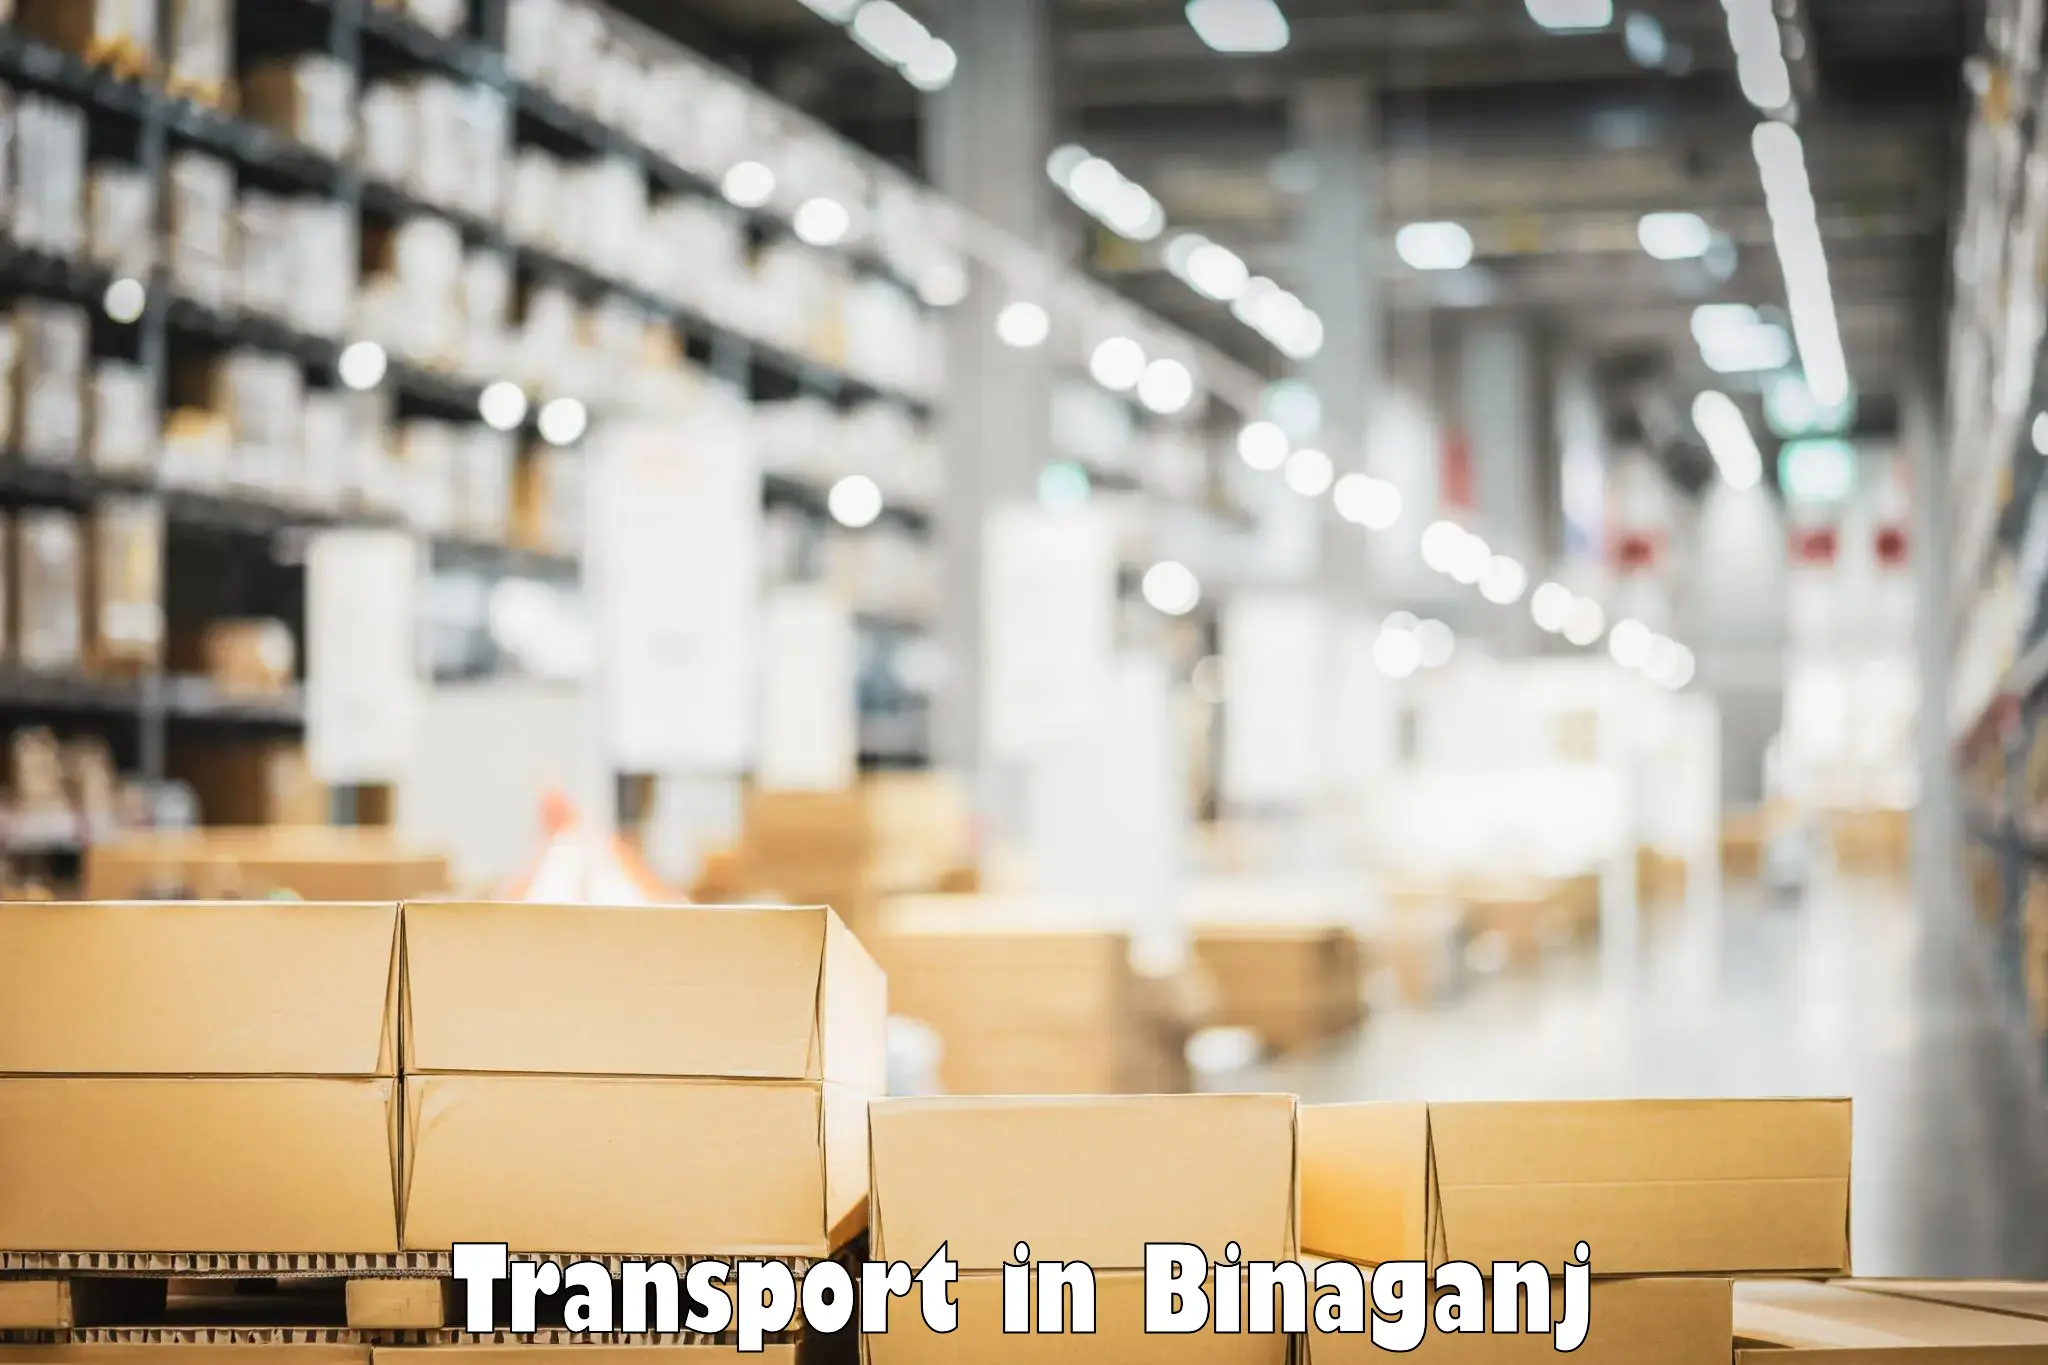 Shipping services in Binaganj